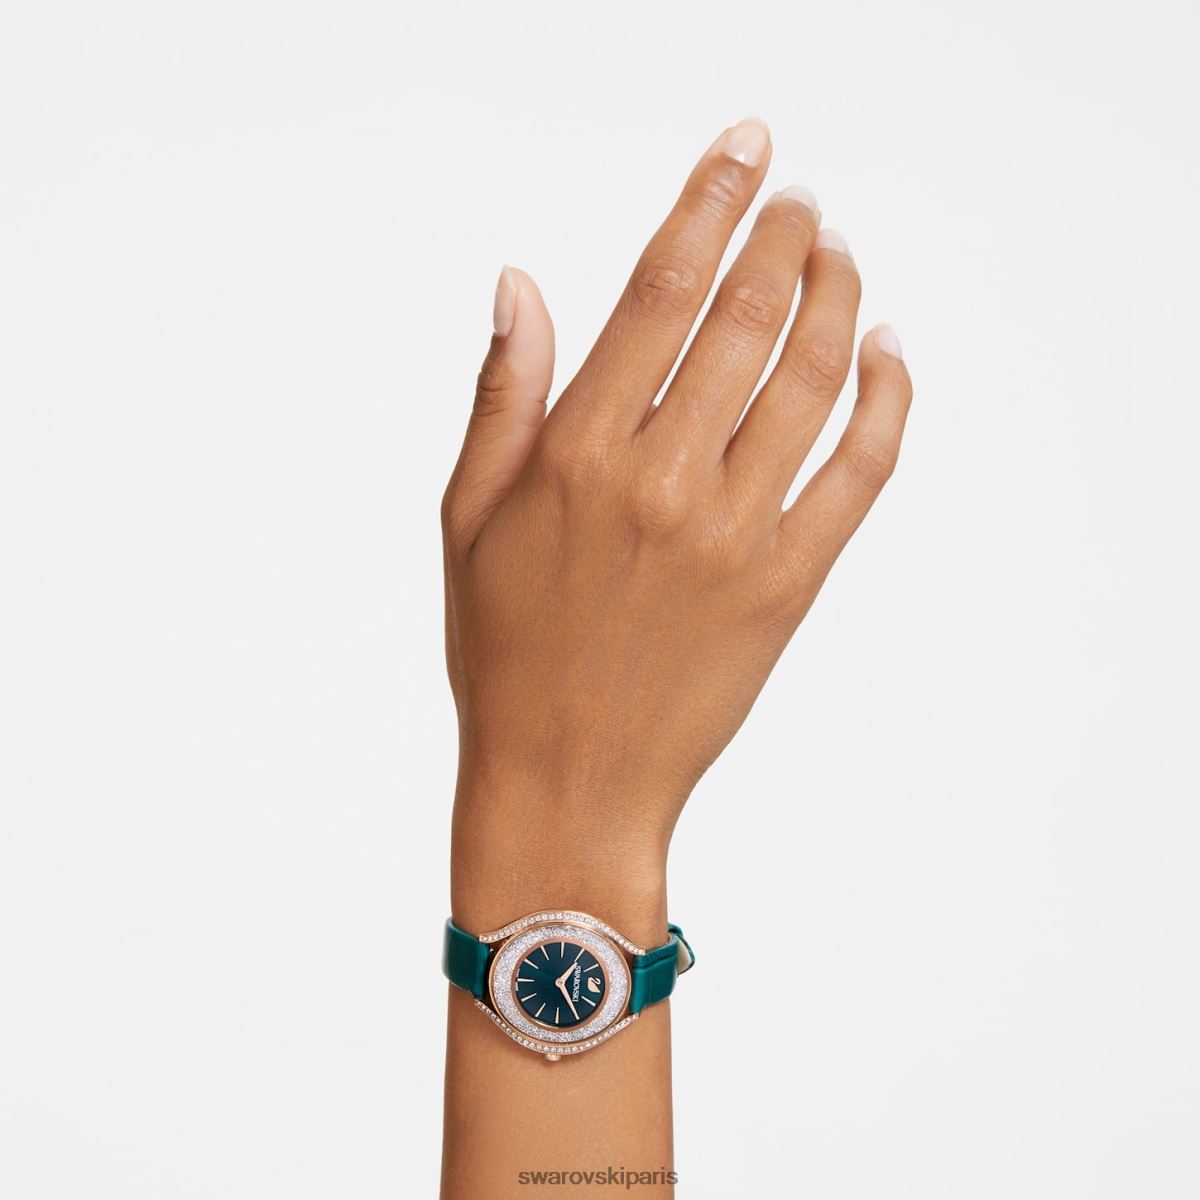 accessoires Swarovski montre aura cristalline fabrication suisse, bracelet en cuir, vert, finition doré rose RZD0XJ1155